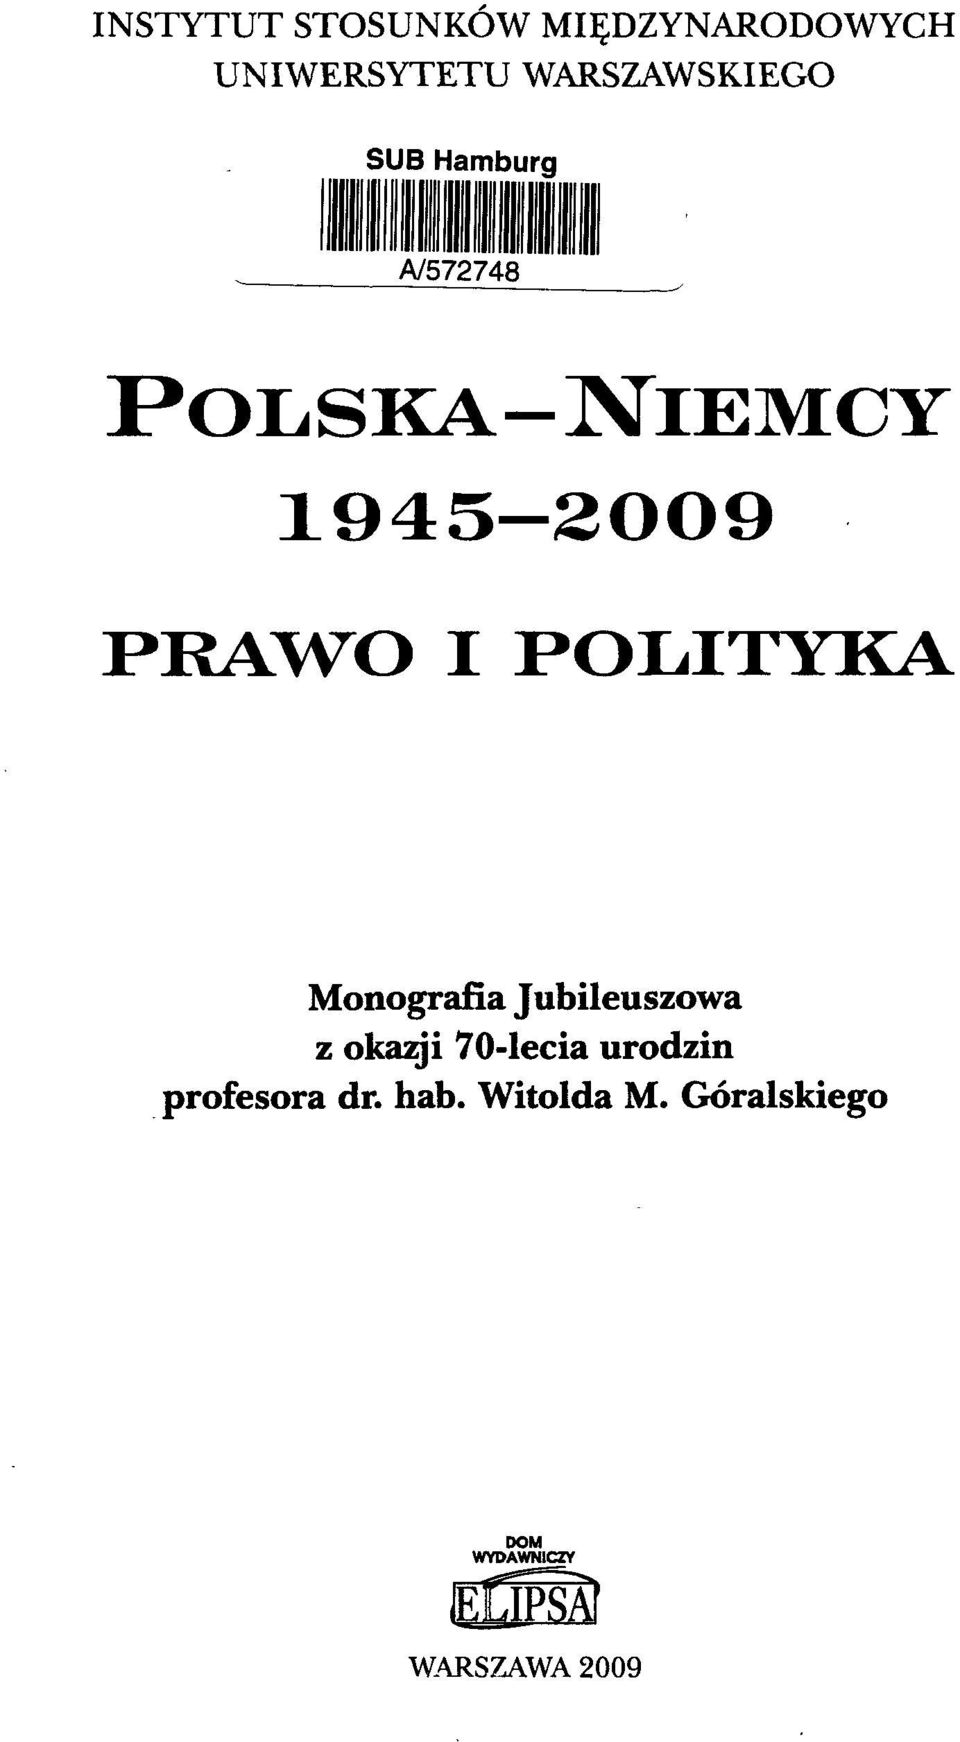 PRAWO I POLITYKA Monografia Jubileuszowa z okazji 70-lecia